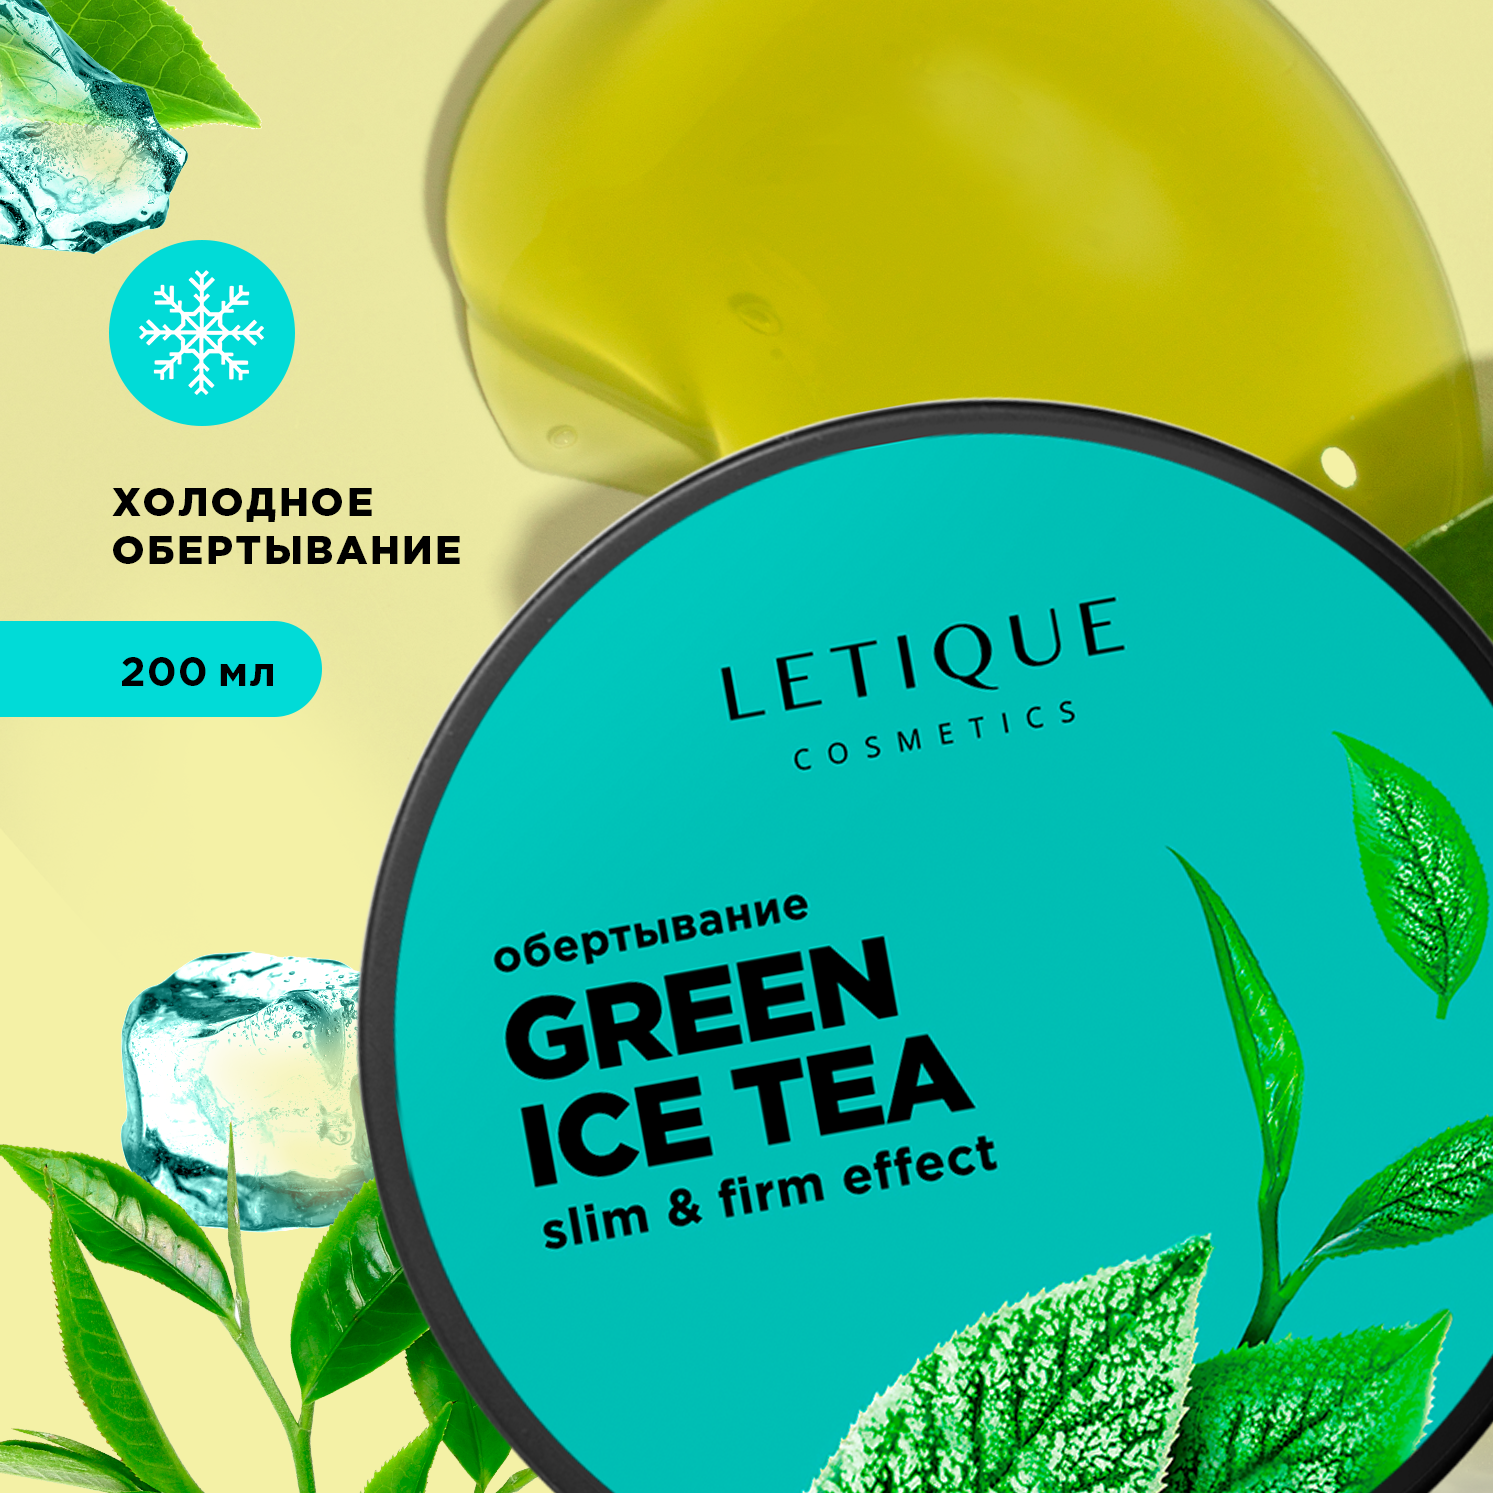 Обертывание холодное для тела Letique Cosmetics Green Ice Tea barbaro холодное горячее обертывание для тела avraan 200 0